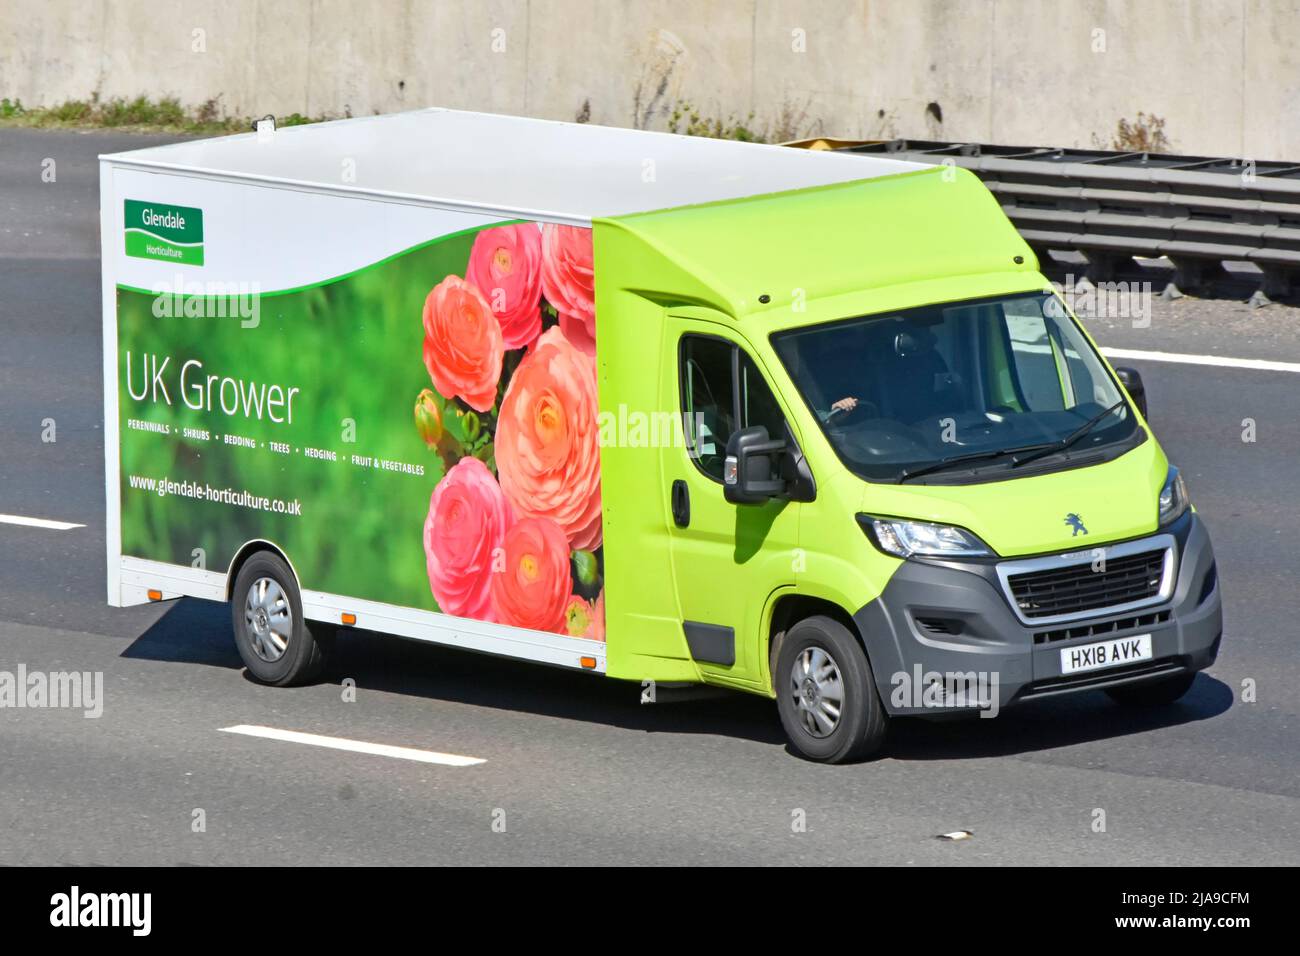 Glendale horticulture un producteur de production d'usine au Royaume-Uni vue de face et vue de face d'une camionnette de livraison Peugeot et d'un conducteur voyageant sur la route d'autoroute britannique Banque D'Images